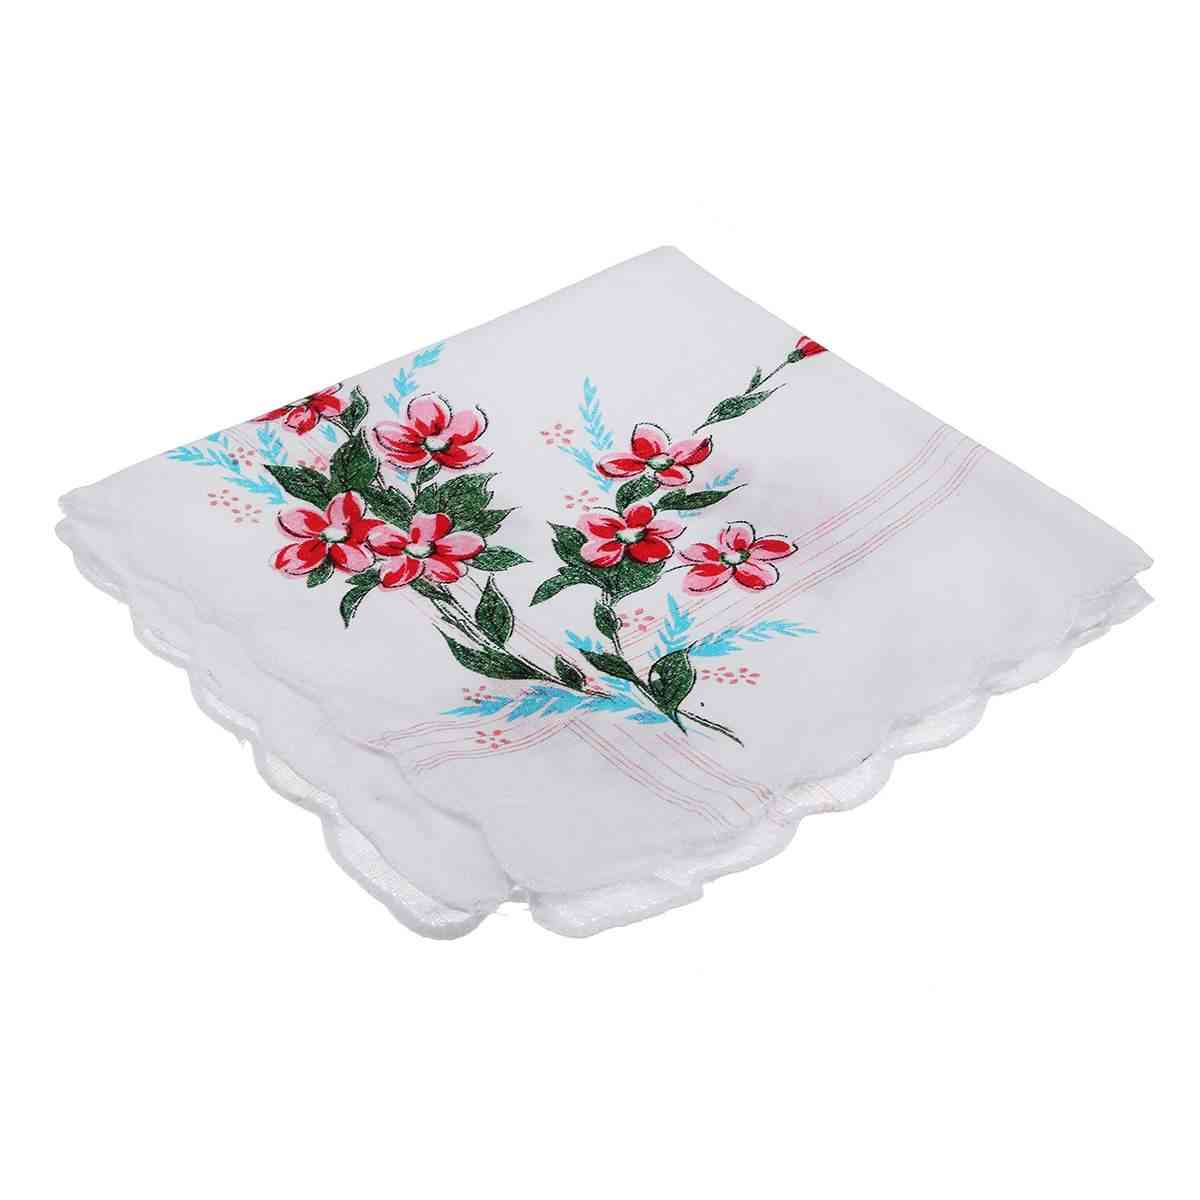 Vintage Design Baumwolle quadratische Blumen Taschentuch - Frauen tragbare Serviette